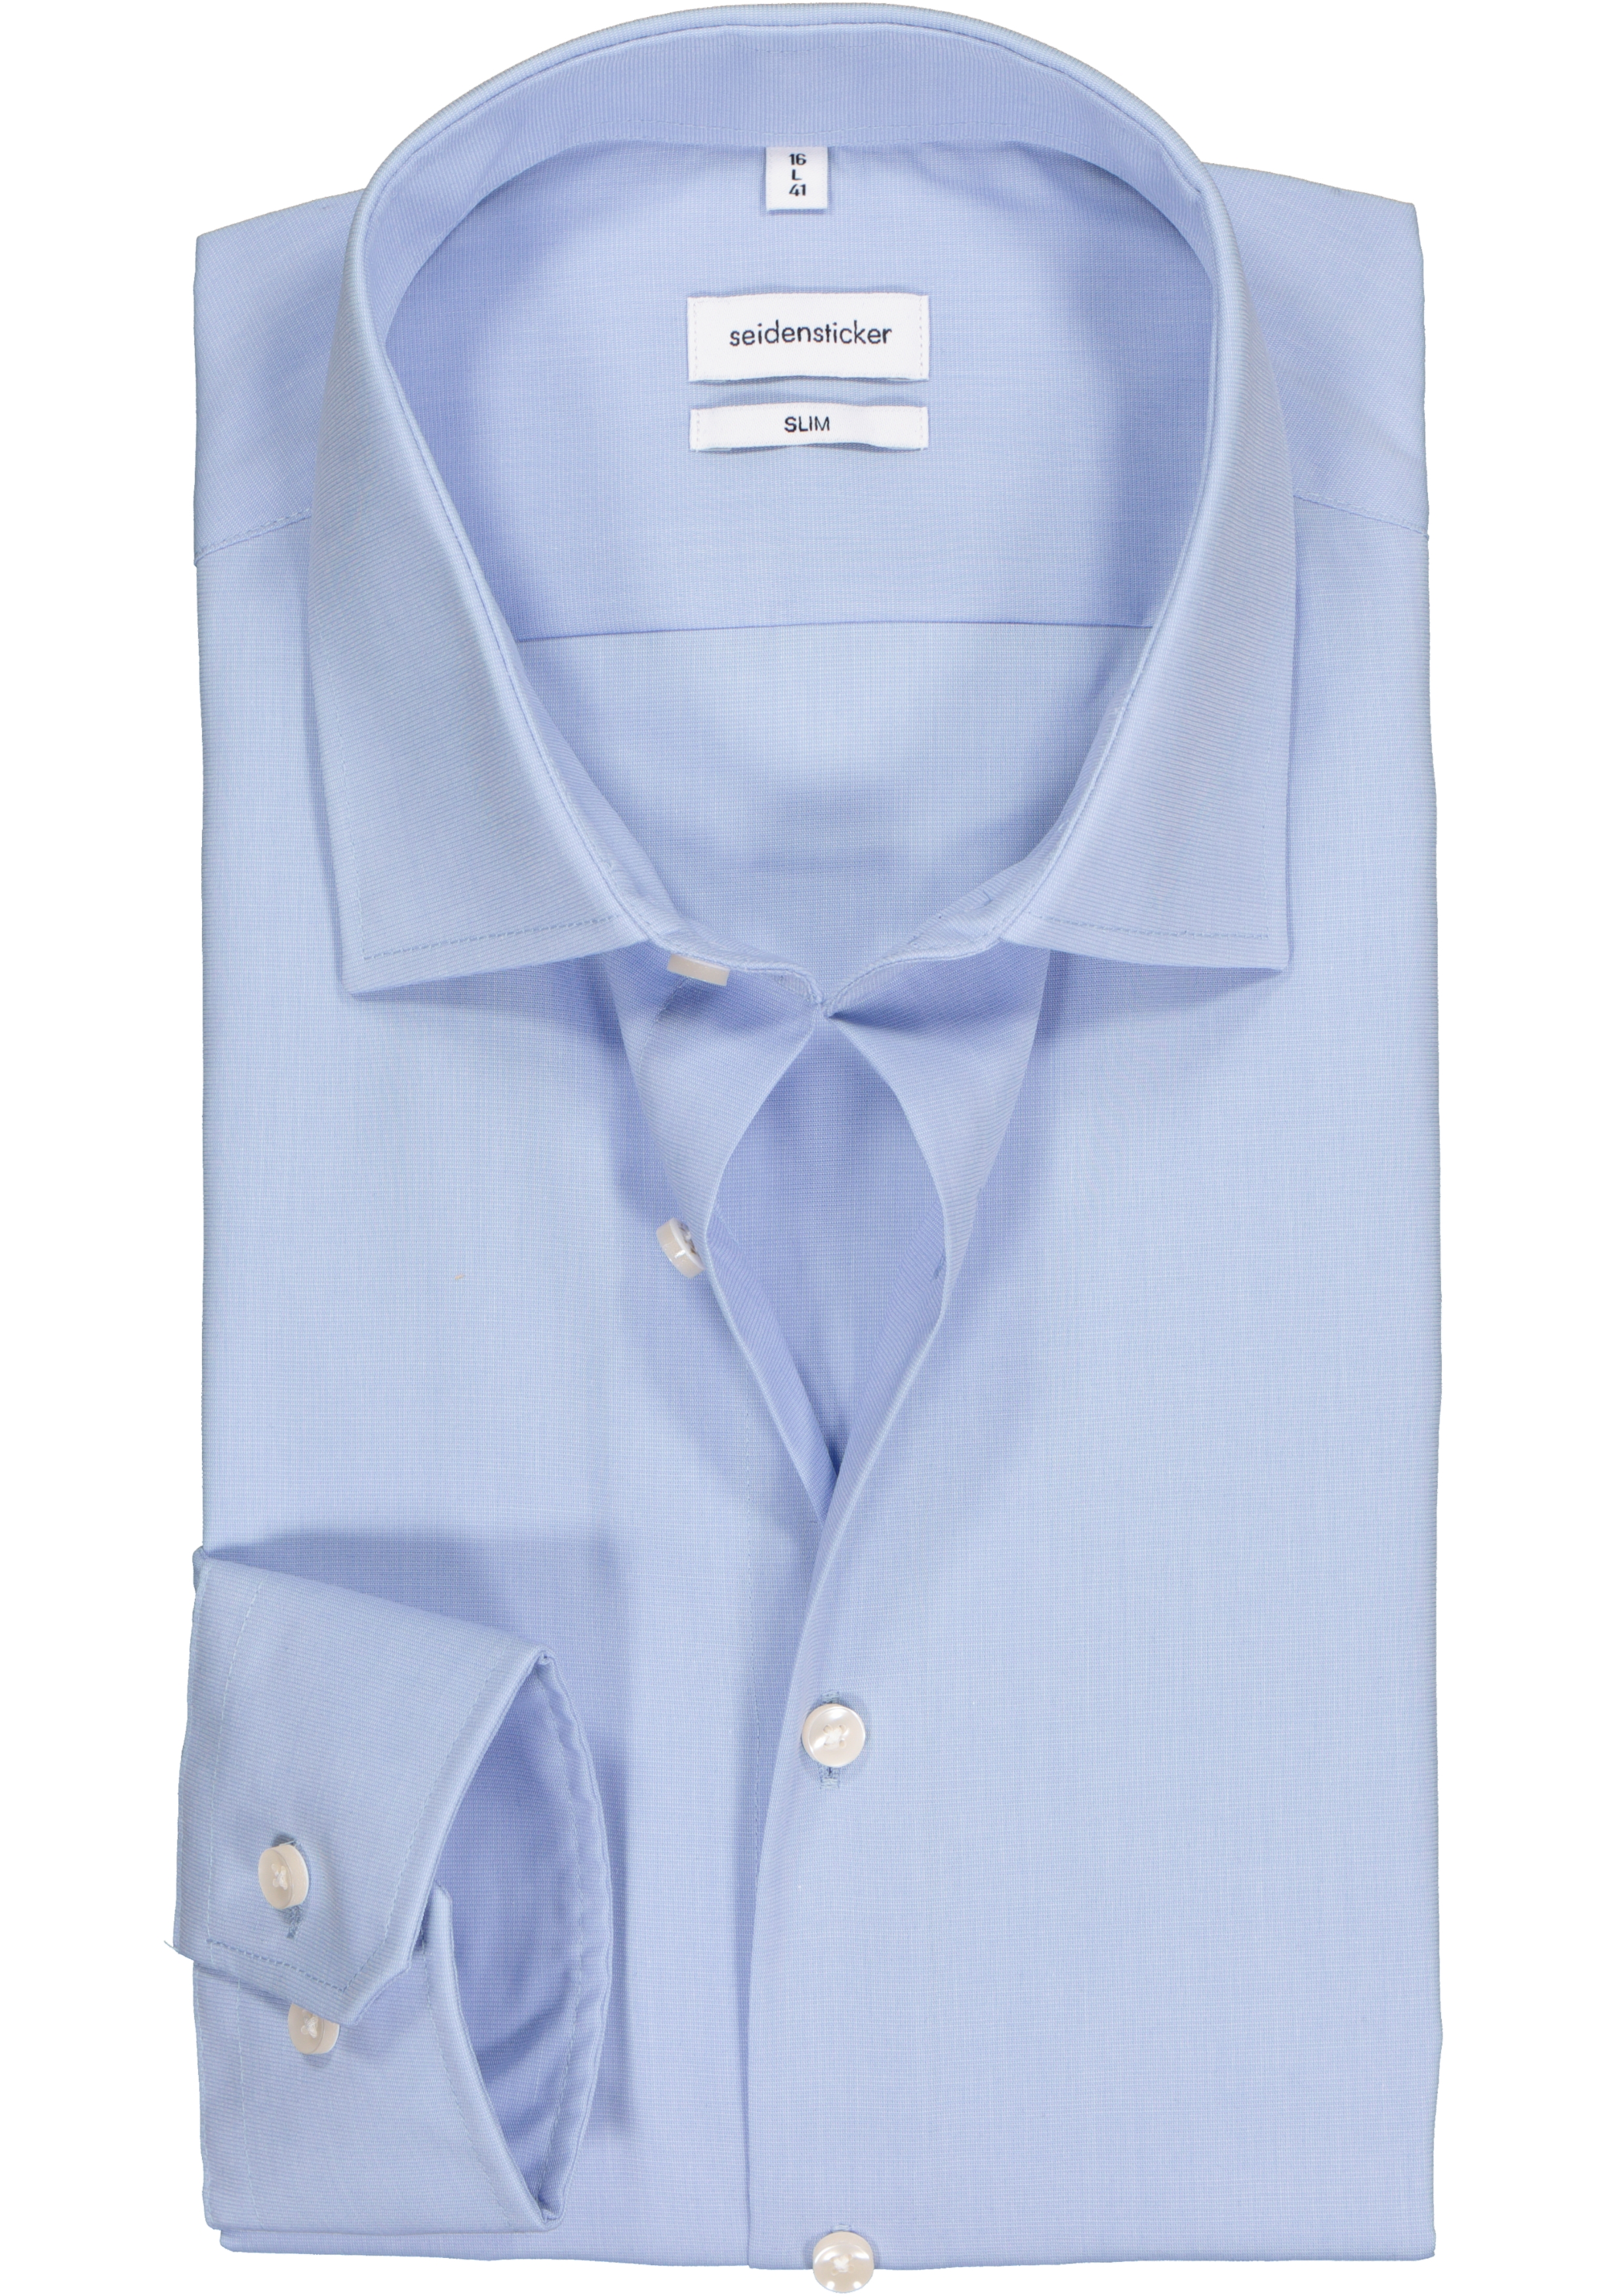 Seidensticker slim fit overhemd, mouwlengte7, lichtblauw (contrast)  